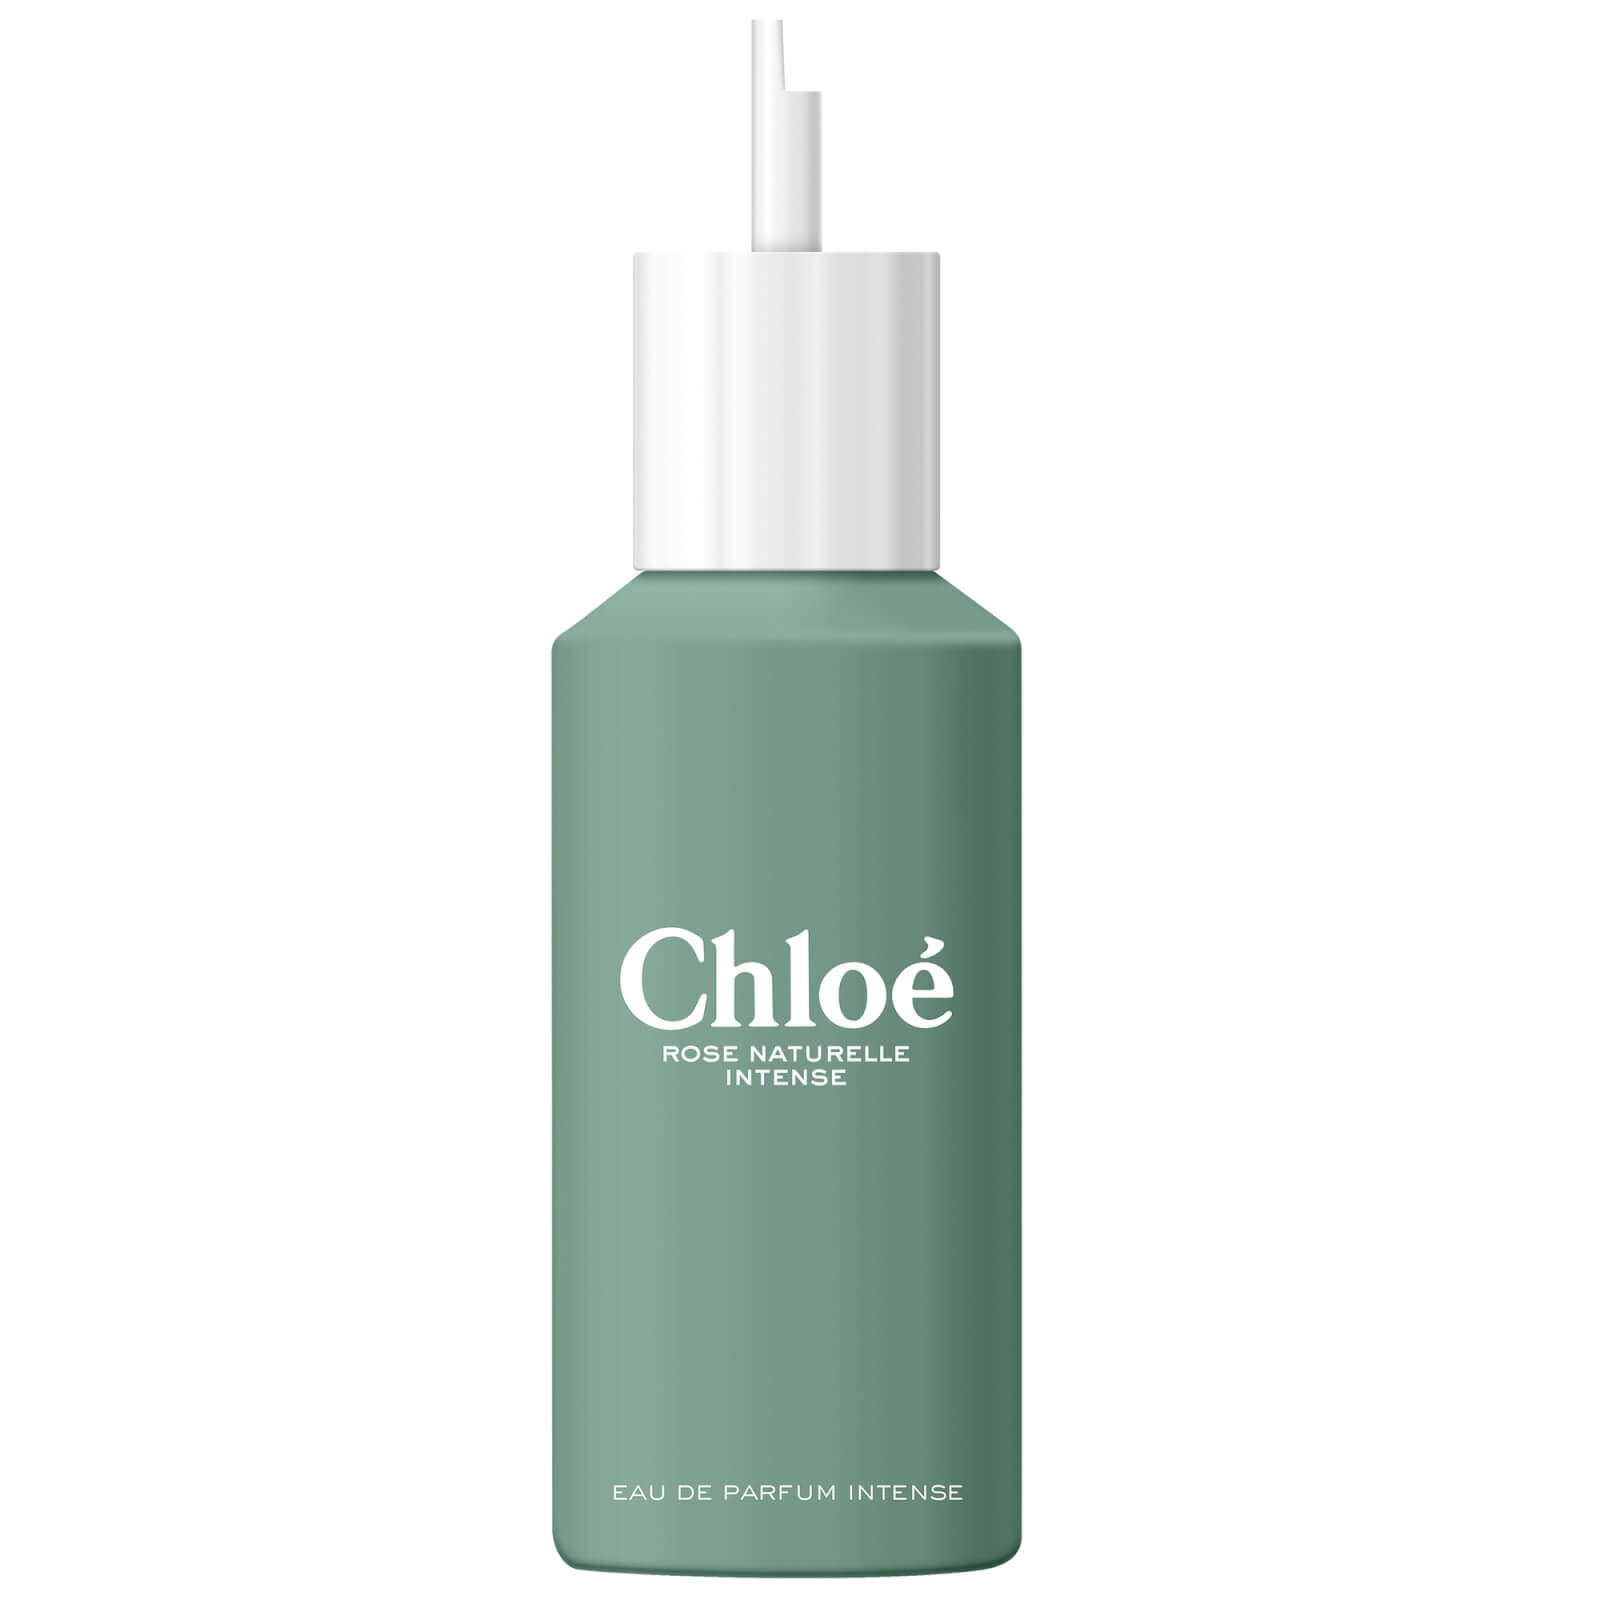 Image of Chloé Rose Naturelle Intense Eau de Parfum Refill 150ml